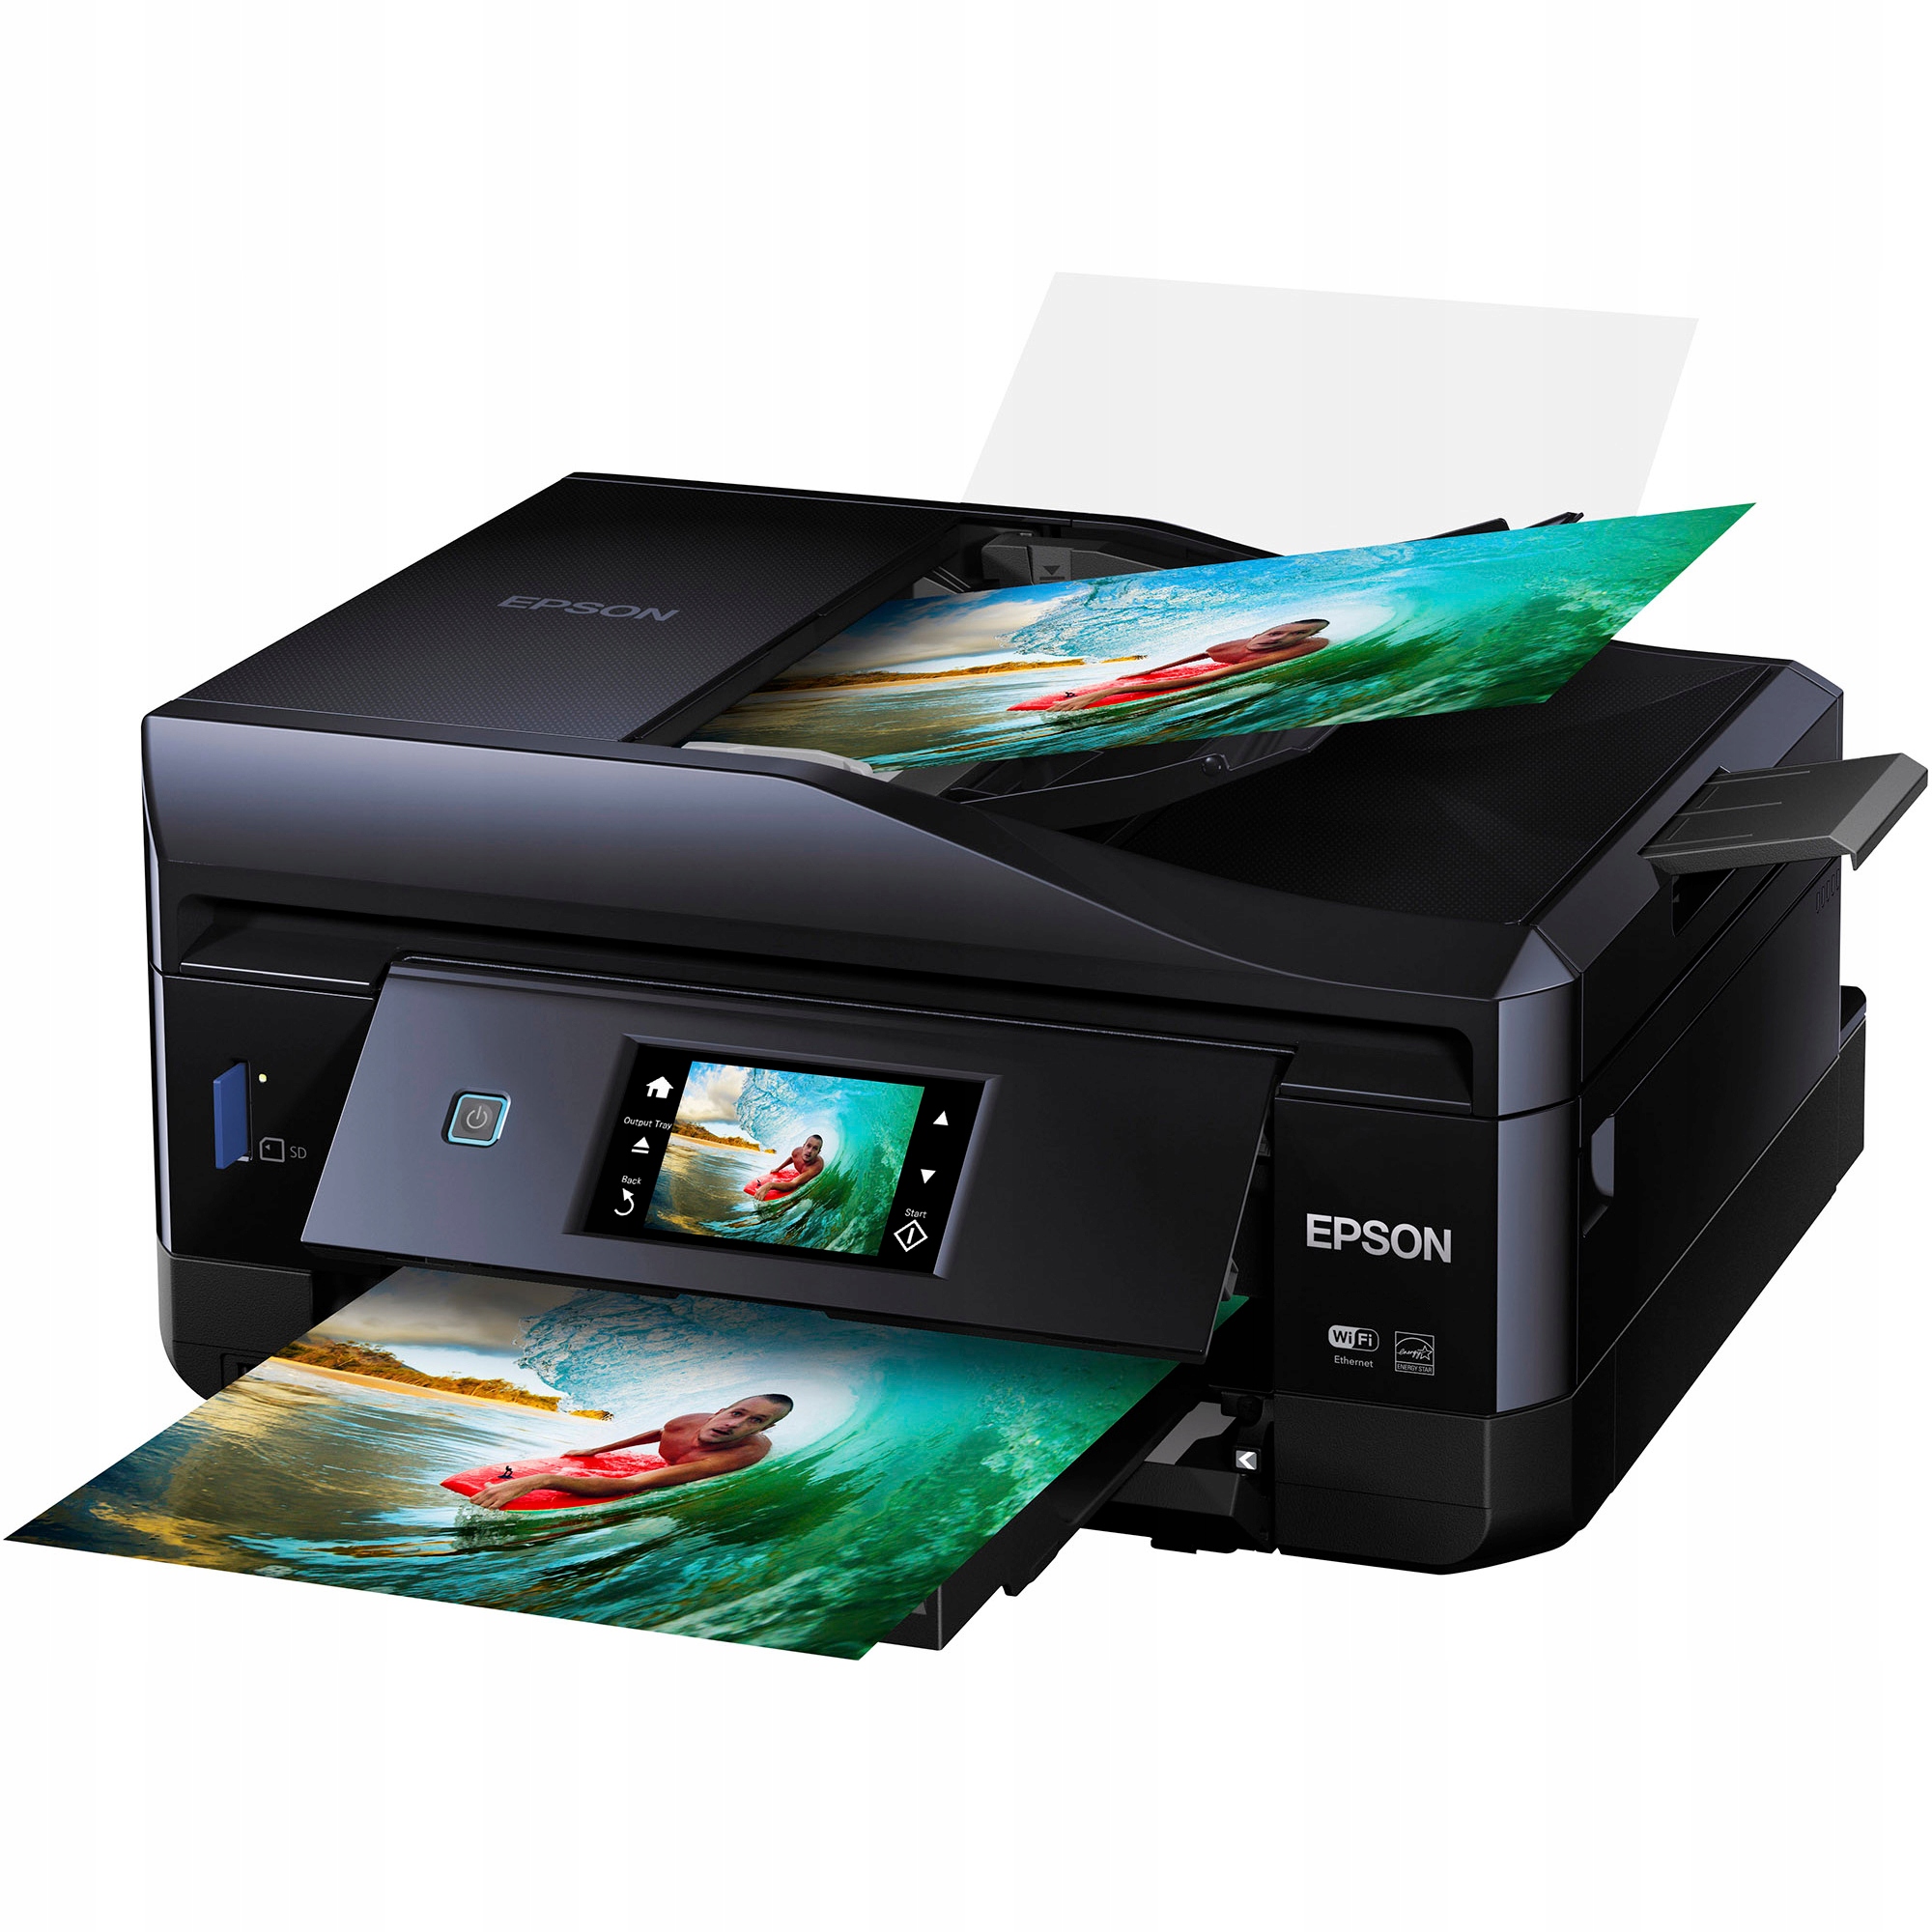 Лазерный принтер для фотографий. МФУ expression Premium XP-820. Epson xp820. Epson 820. Принтер для фото печате Епсон.